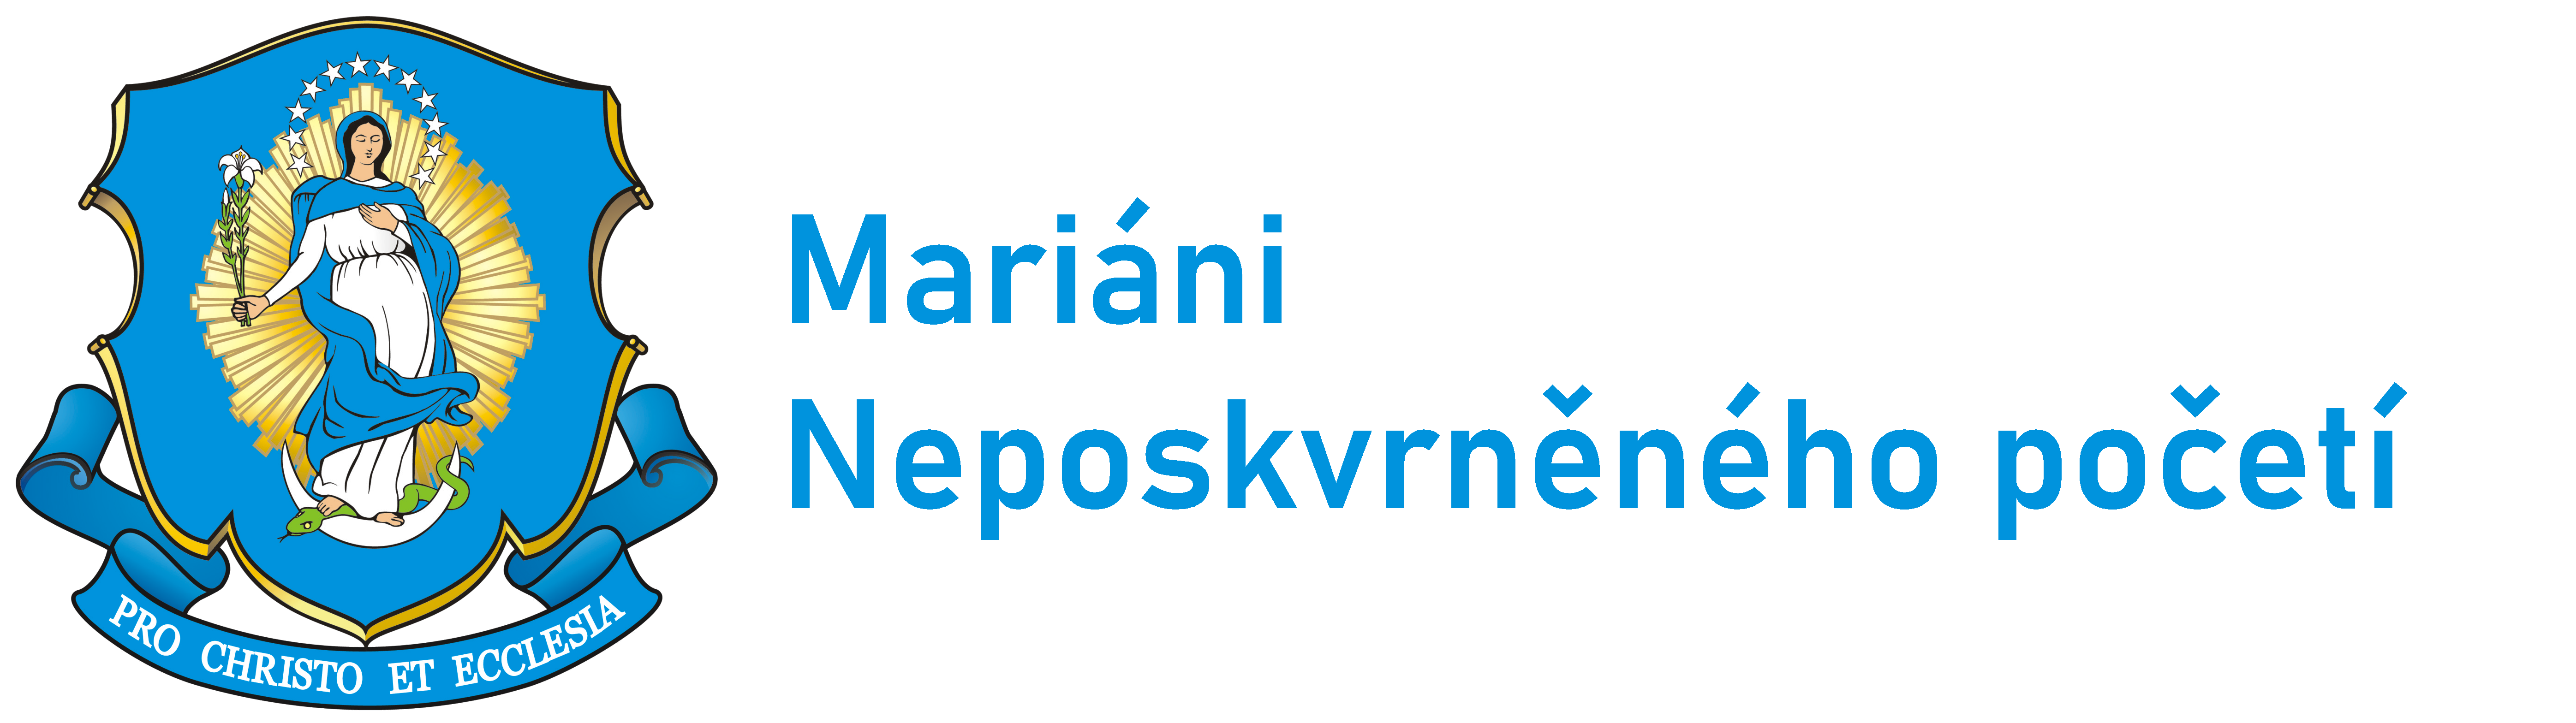 Logo Logo - Mariáni ČR